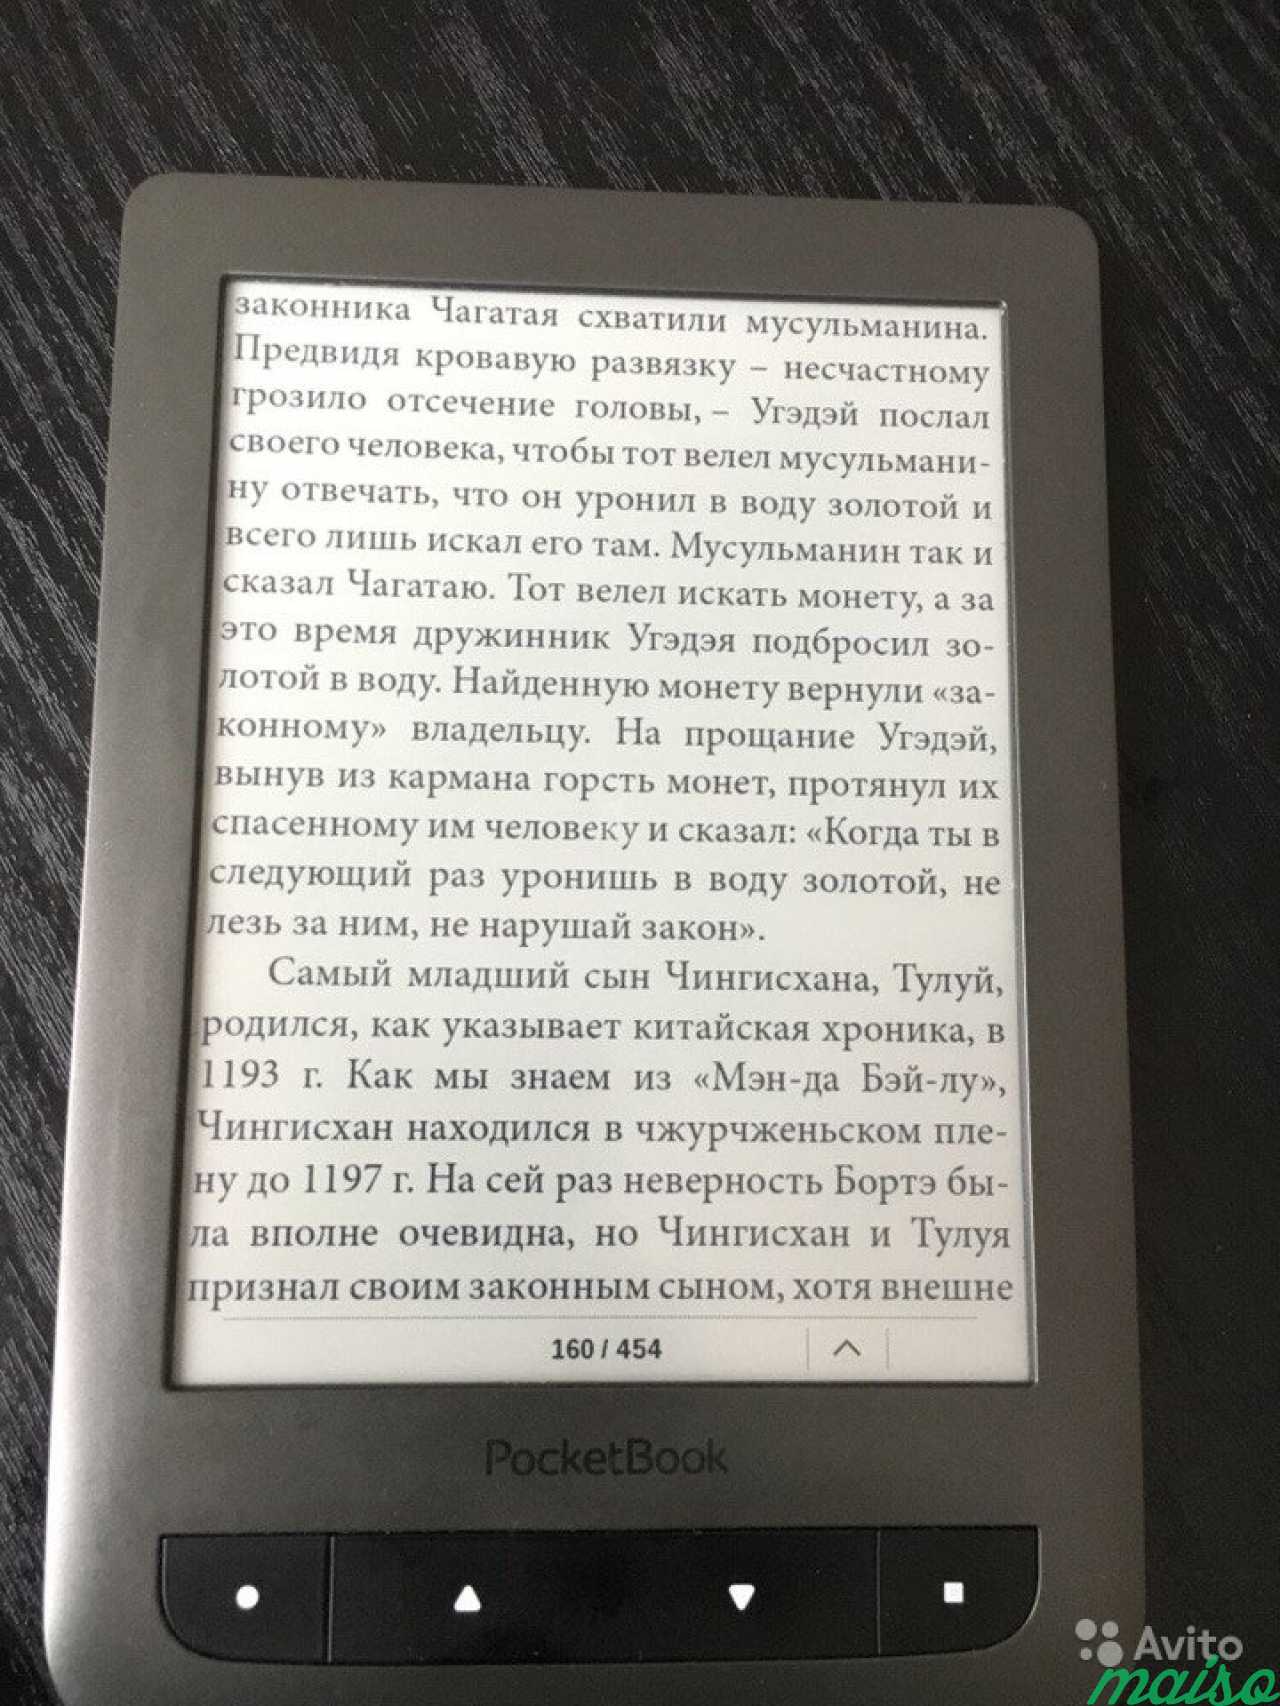 Электронная книга Pocketbook 624 в Санкт-Петербурге. Фото 1